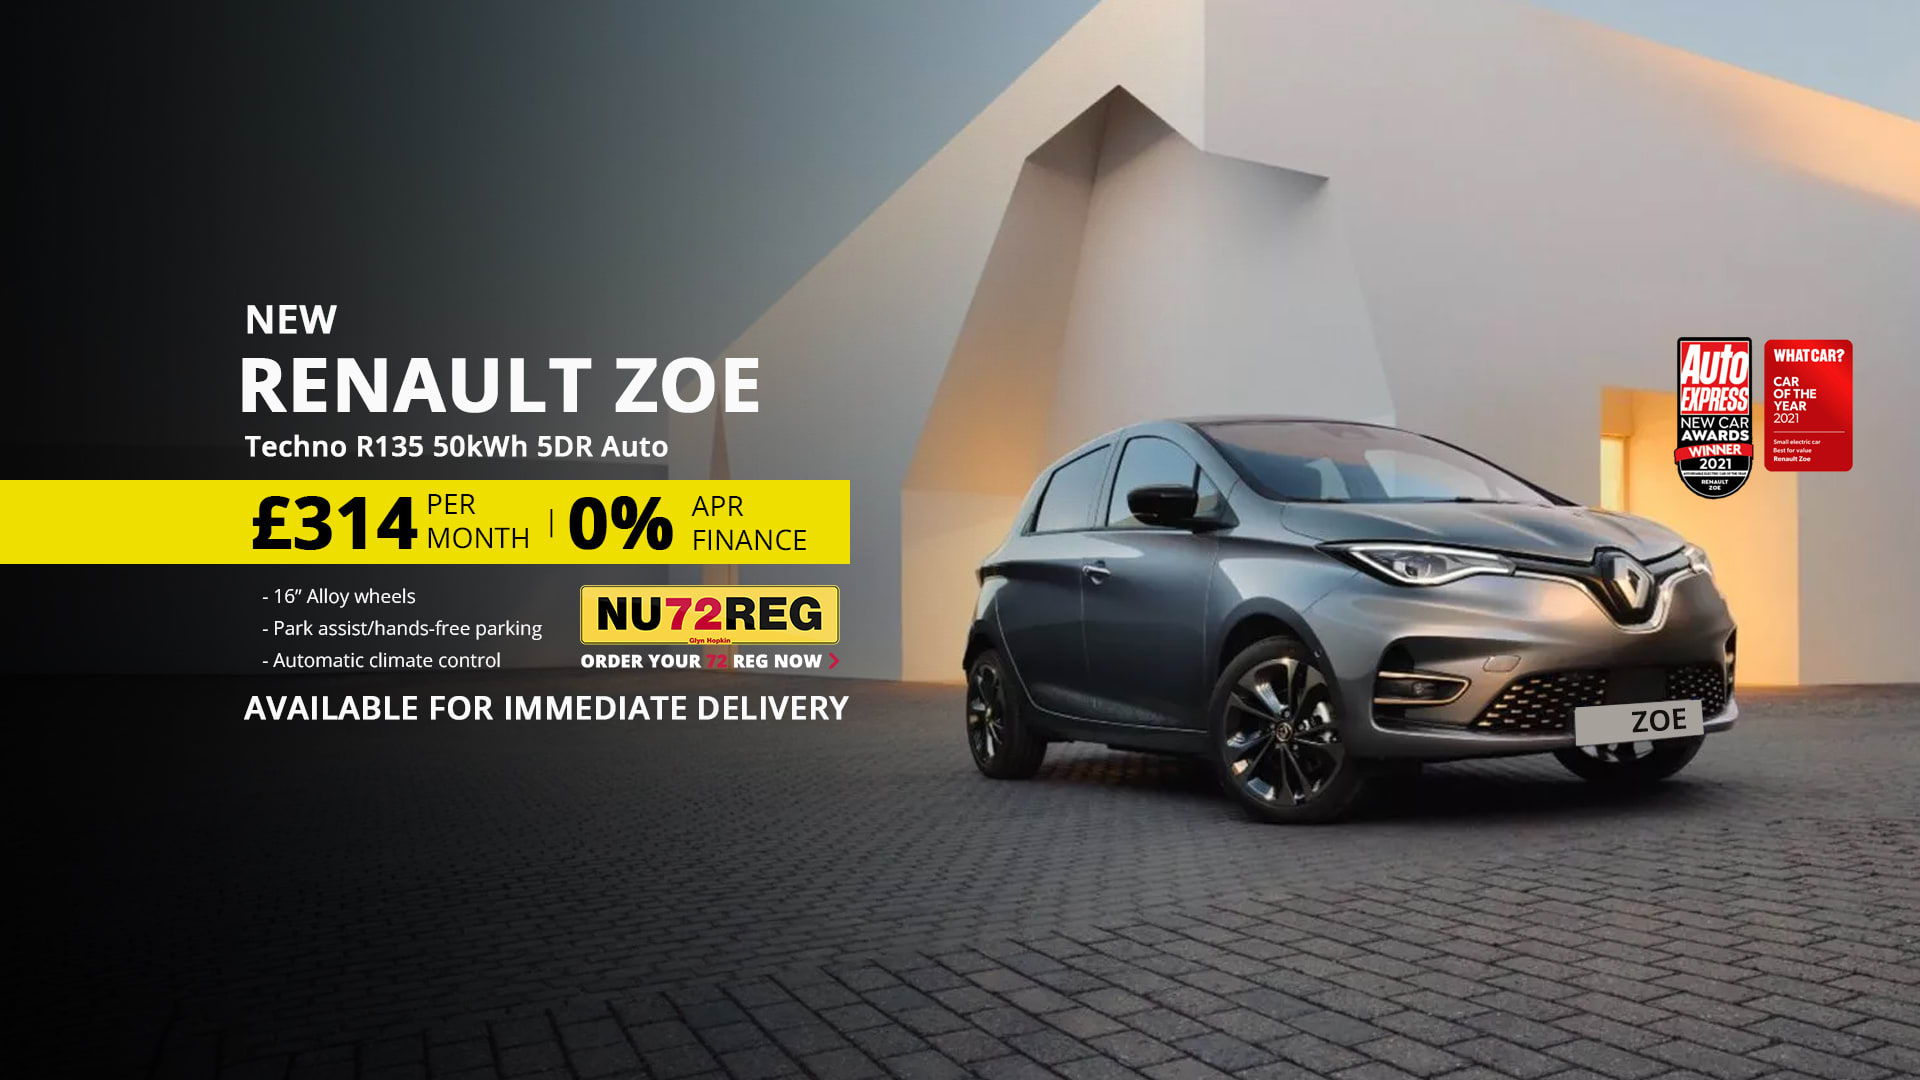 New Renault Zoe